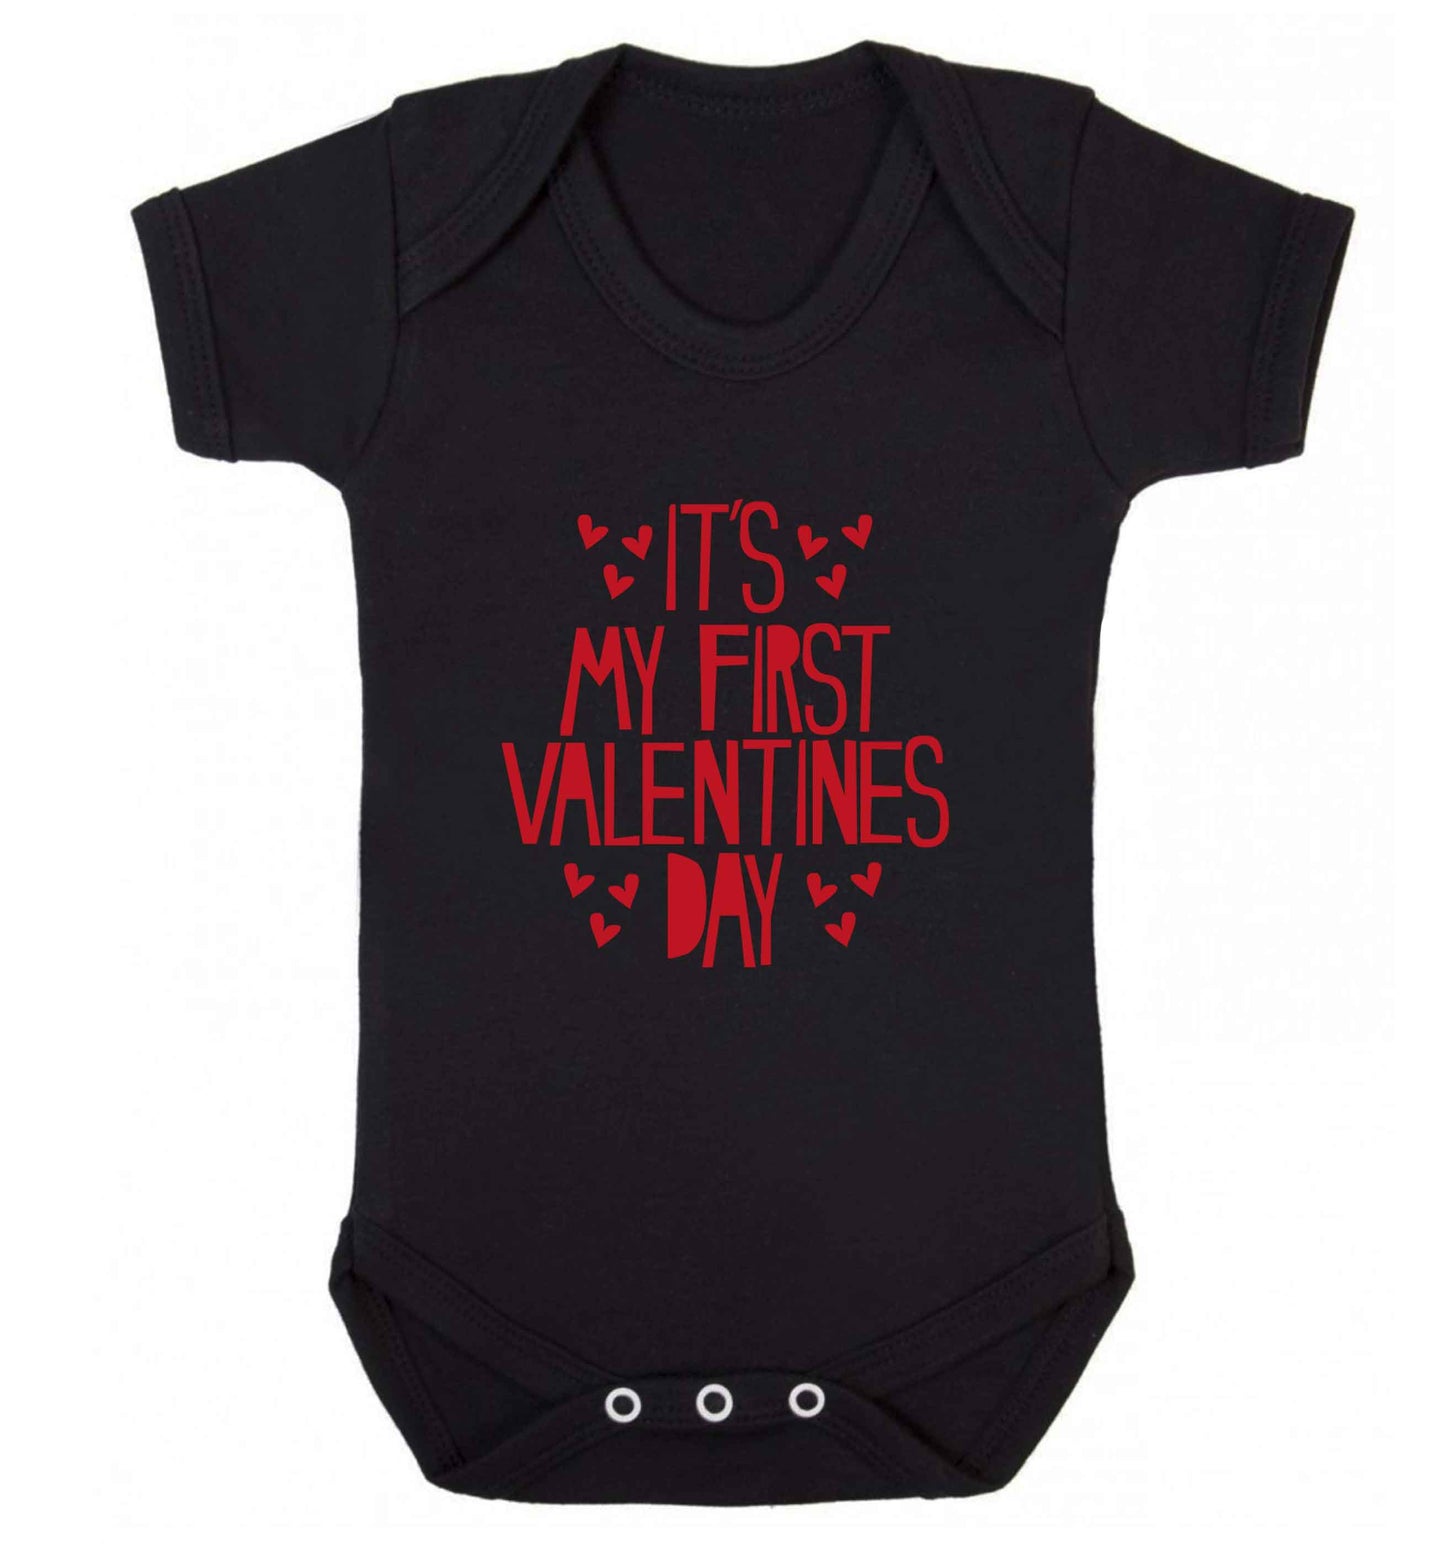 Hearts It's my First Valentine's Day baby vest black 18-24 months